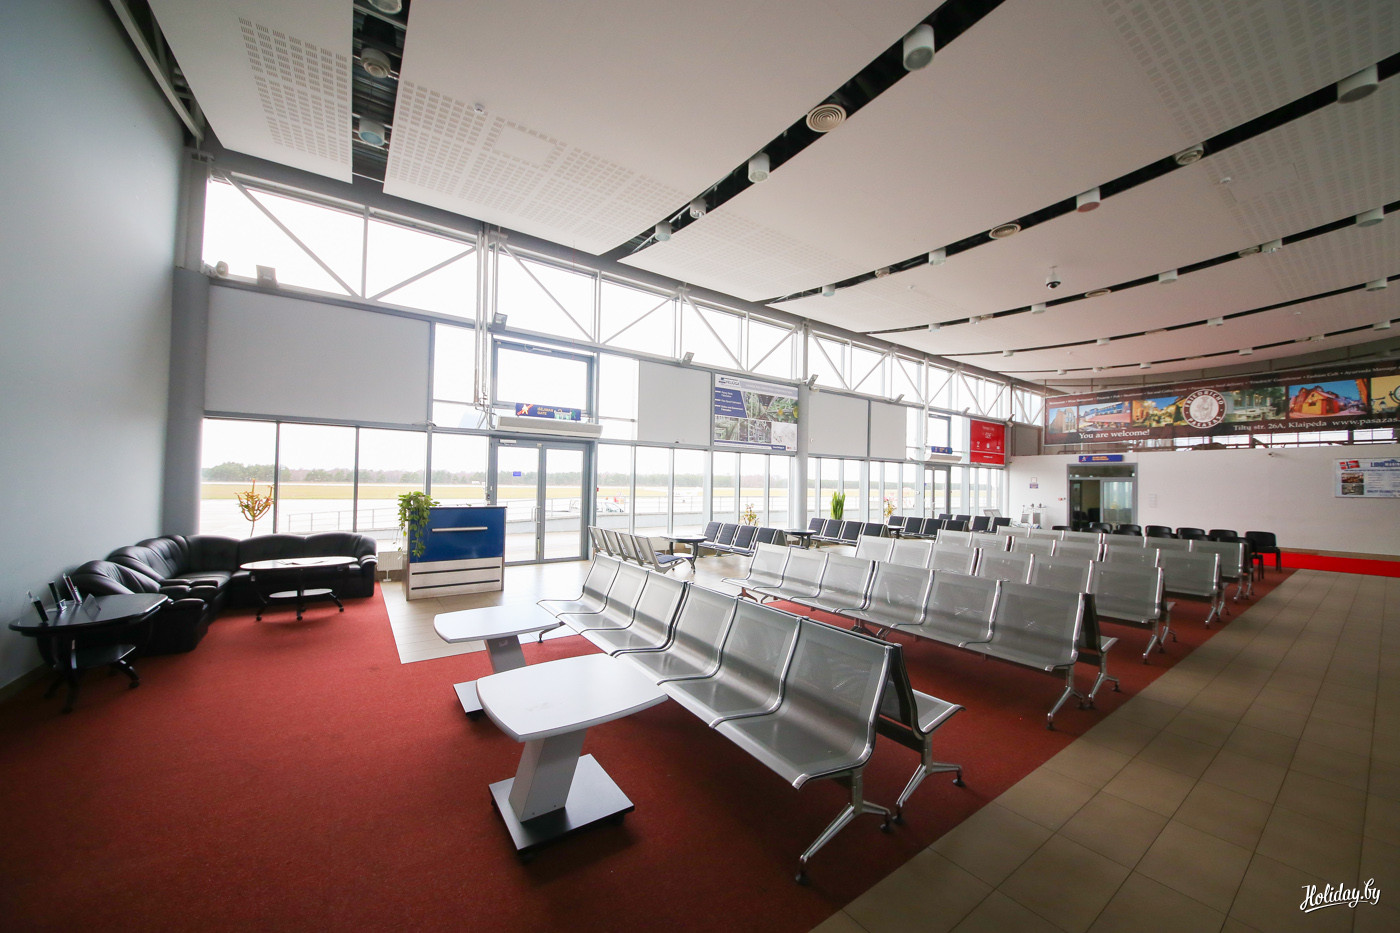 Этот зал аэропорта обновят уже к весне 2016 года